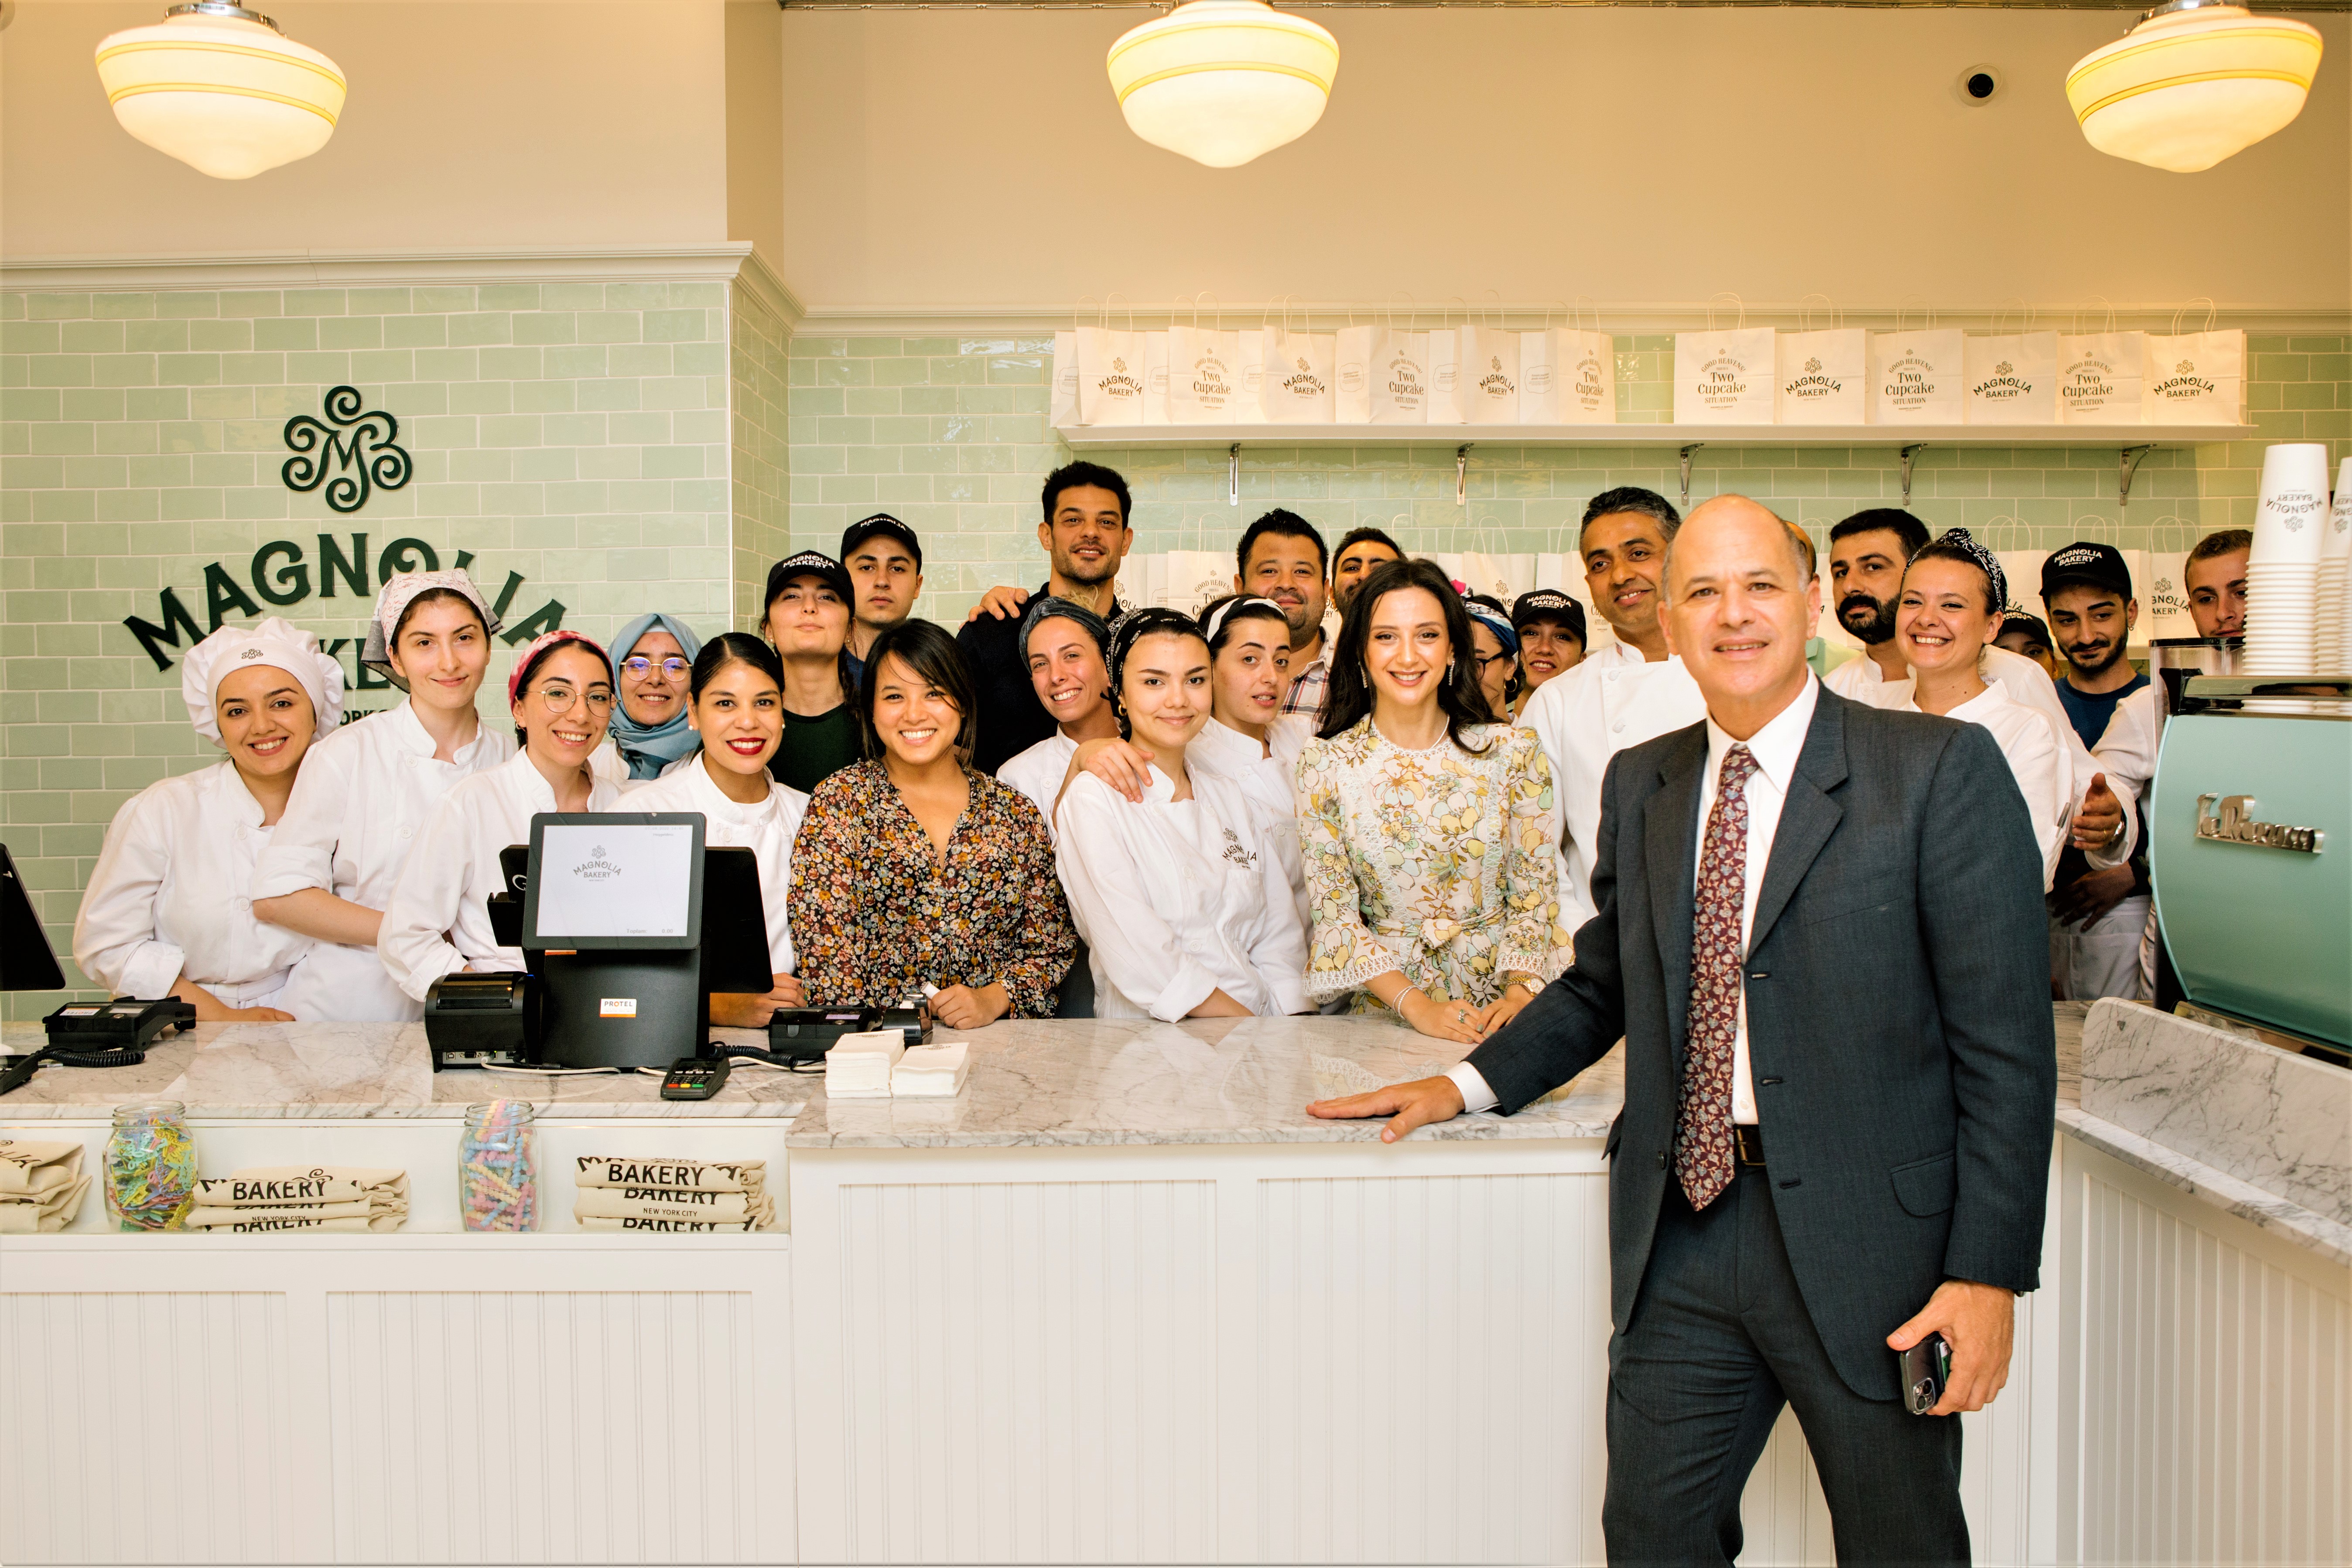 Amerika Birleşik Devletleri İstanbul Başkonsolosluğu’nun Özel Resepsiyon Pastaları  New York City’nin ikonik markası Magnolia Bakery’den…